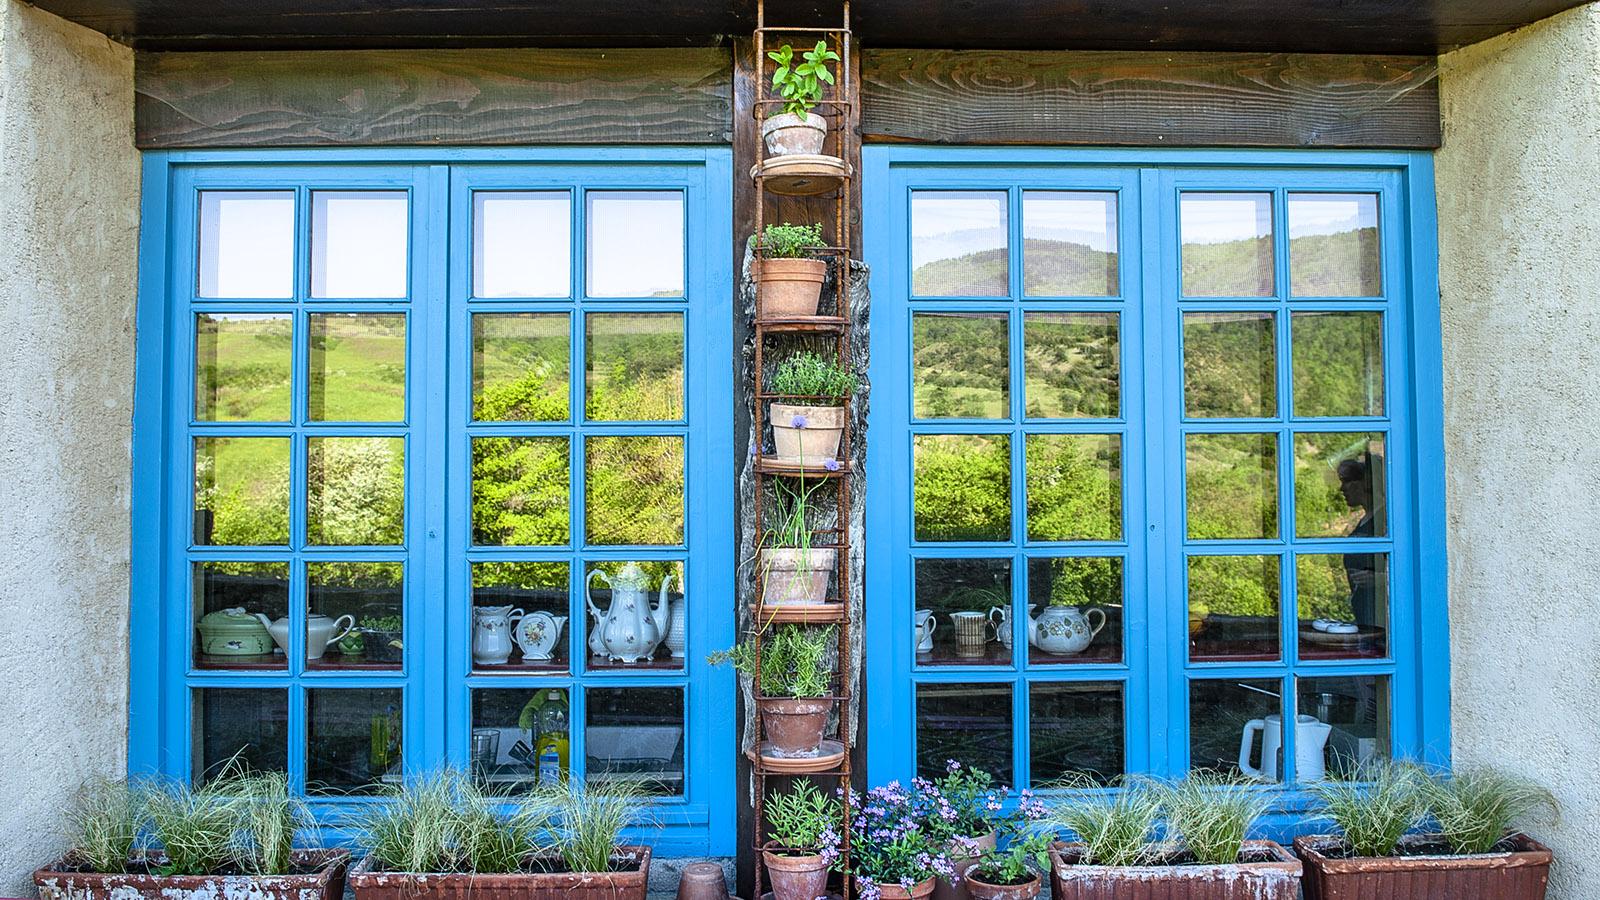 Bugarach: Blumentöpfe, kunstvoll arrangiert zwischen den Fensterrahmen. Foto: Hilke Maunder